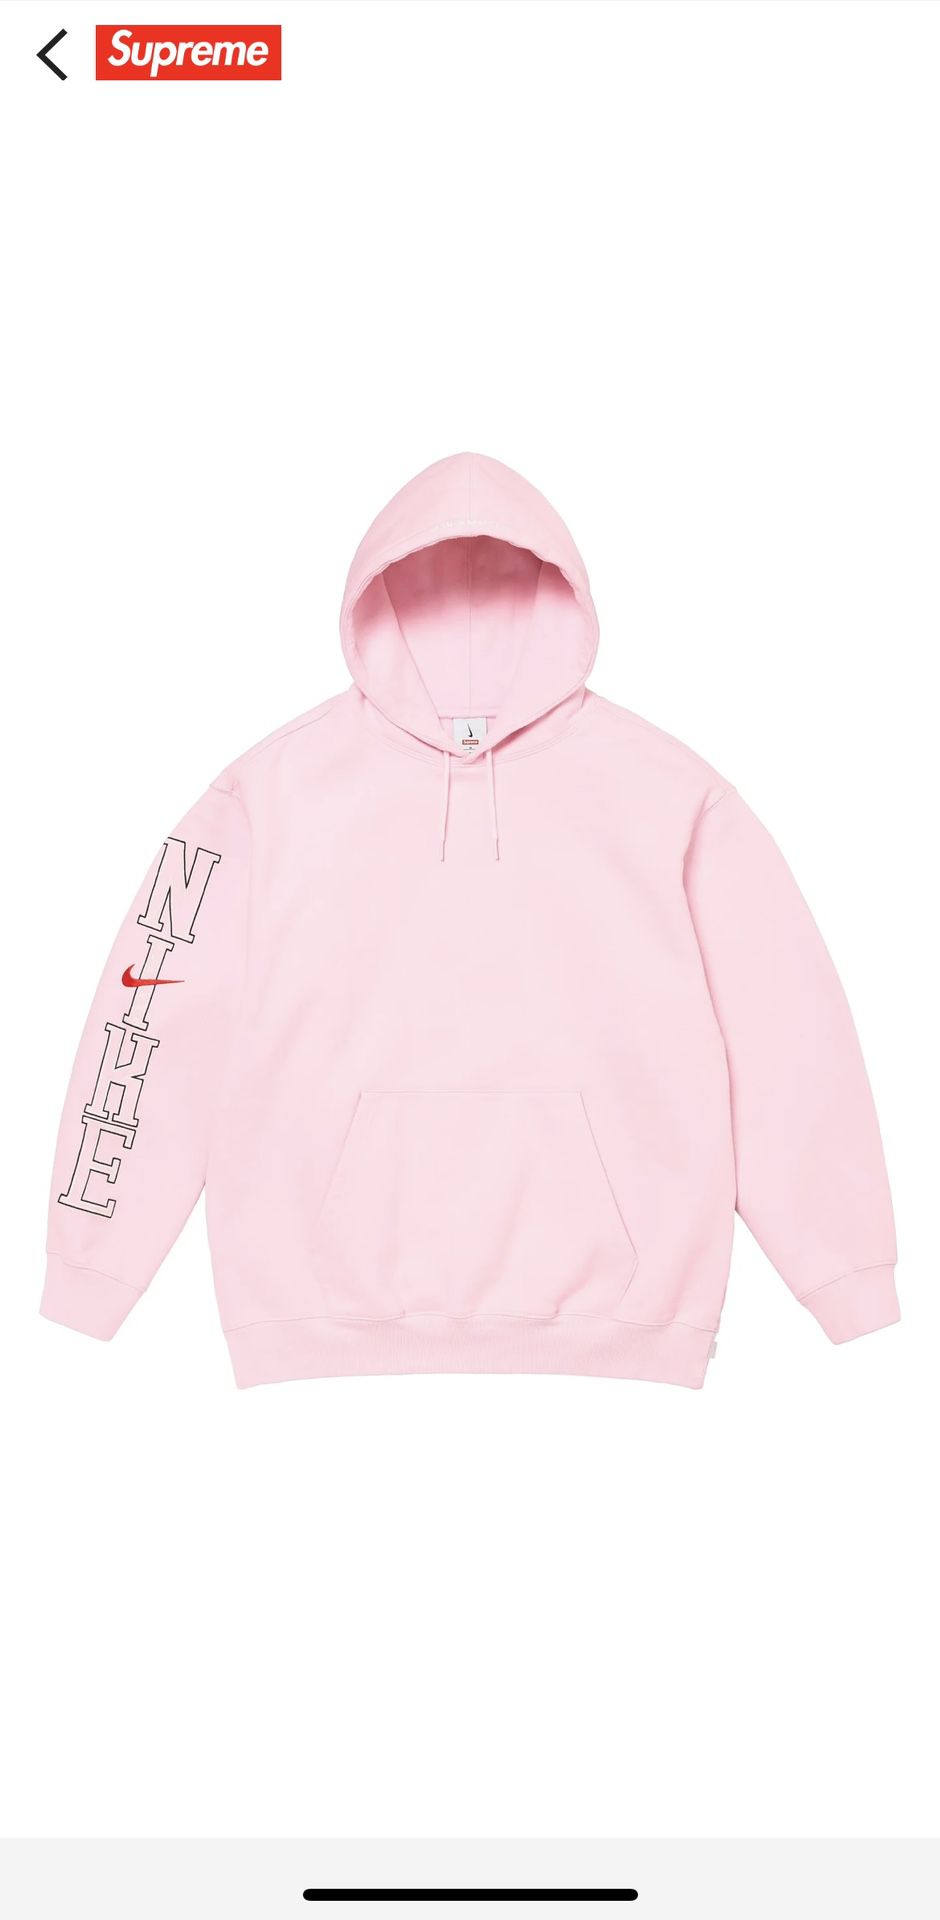 Supreme/Nike Hooded Sweatshirt 